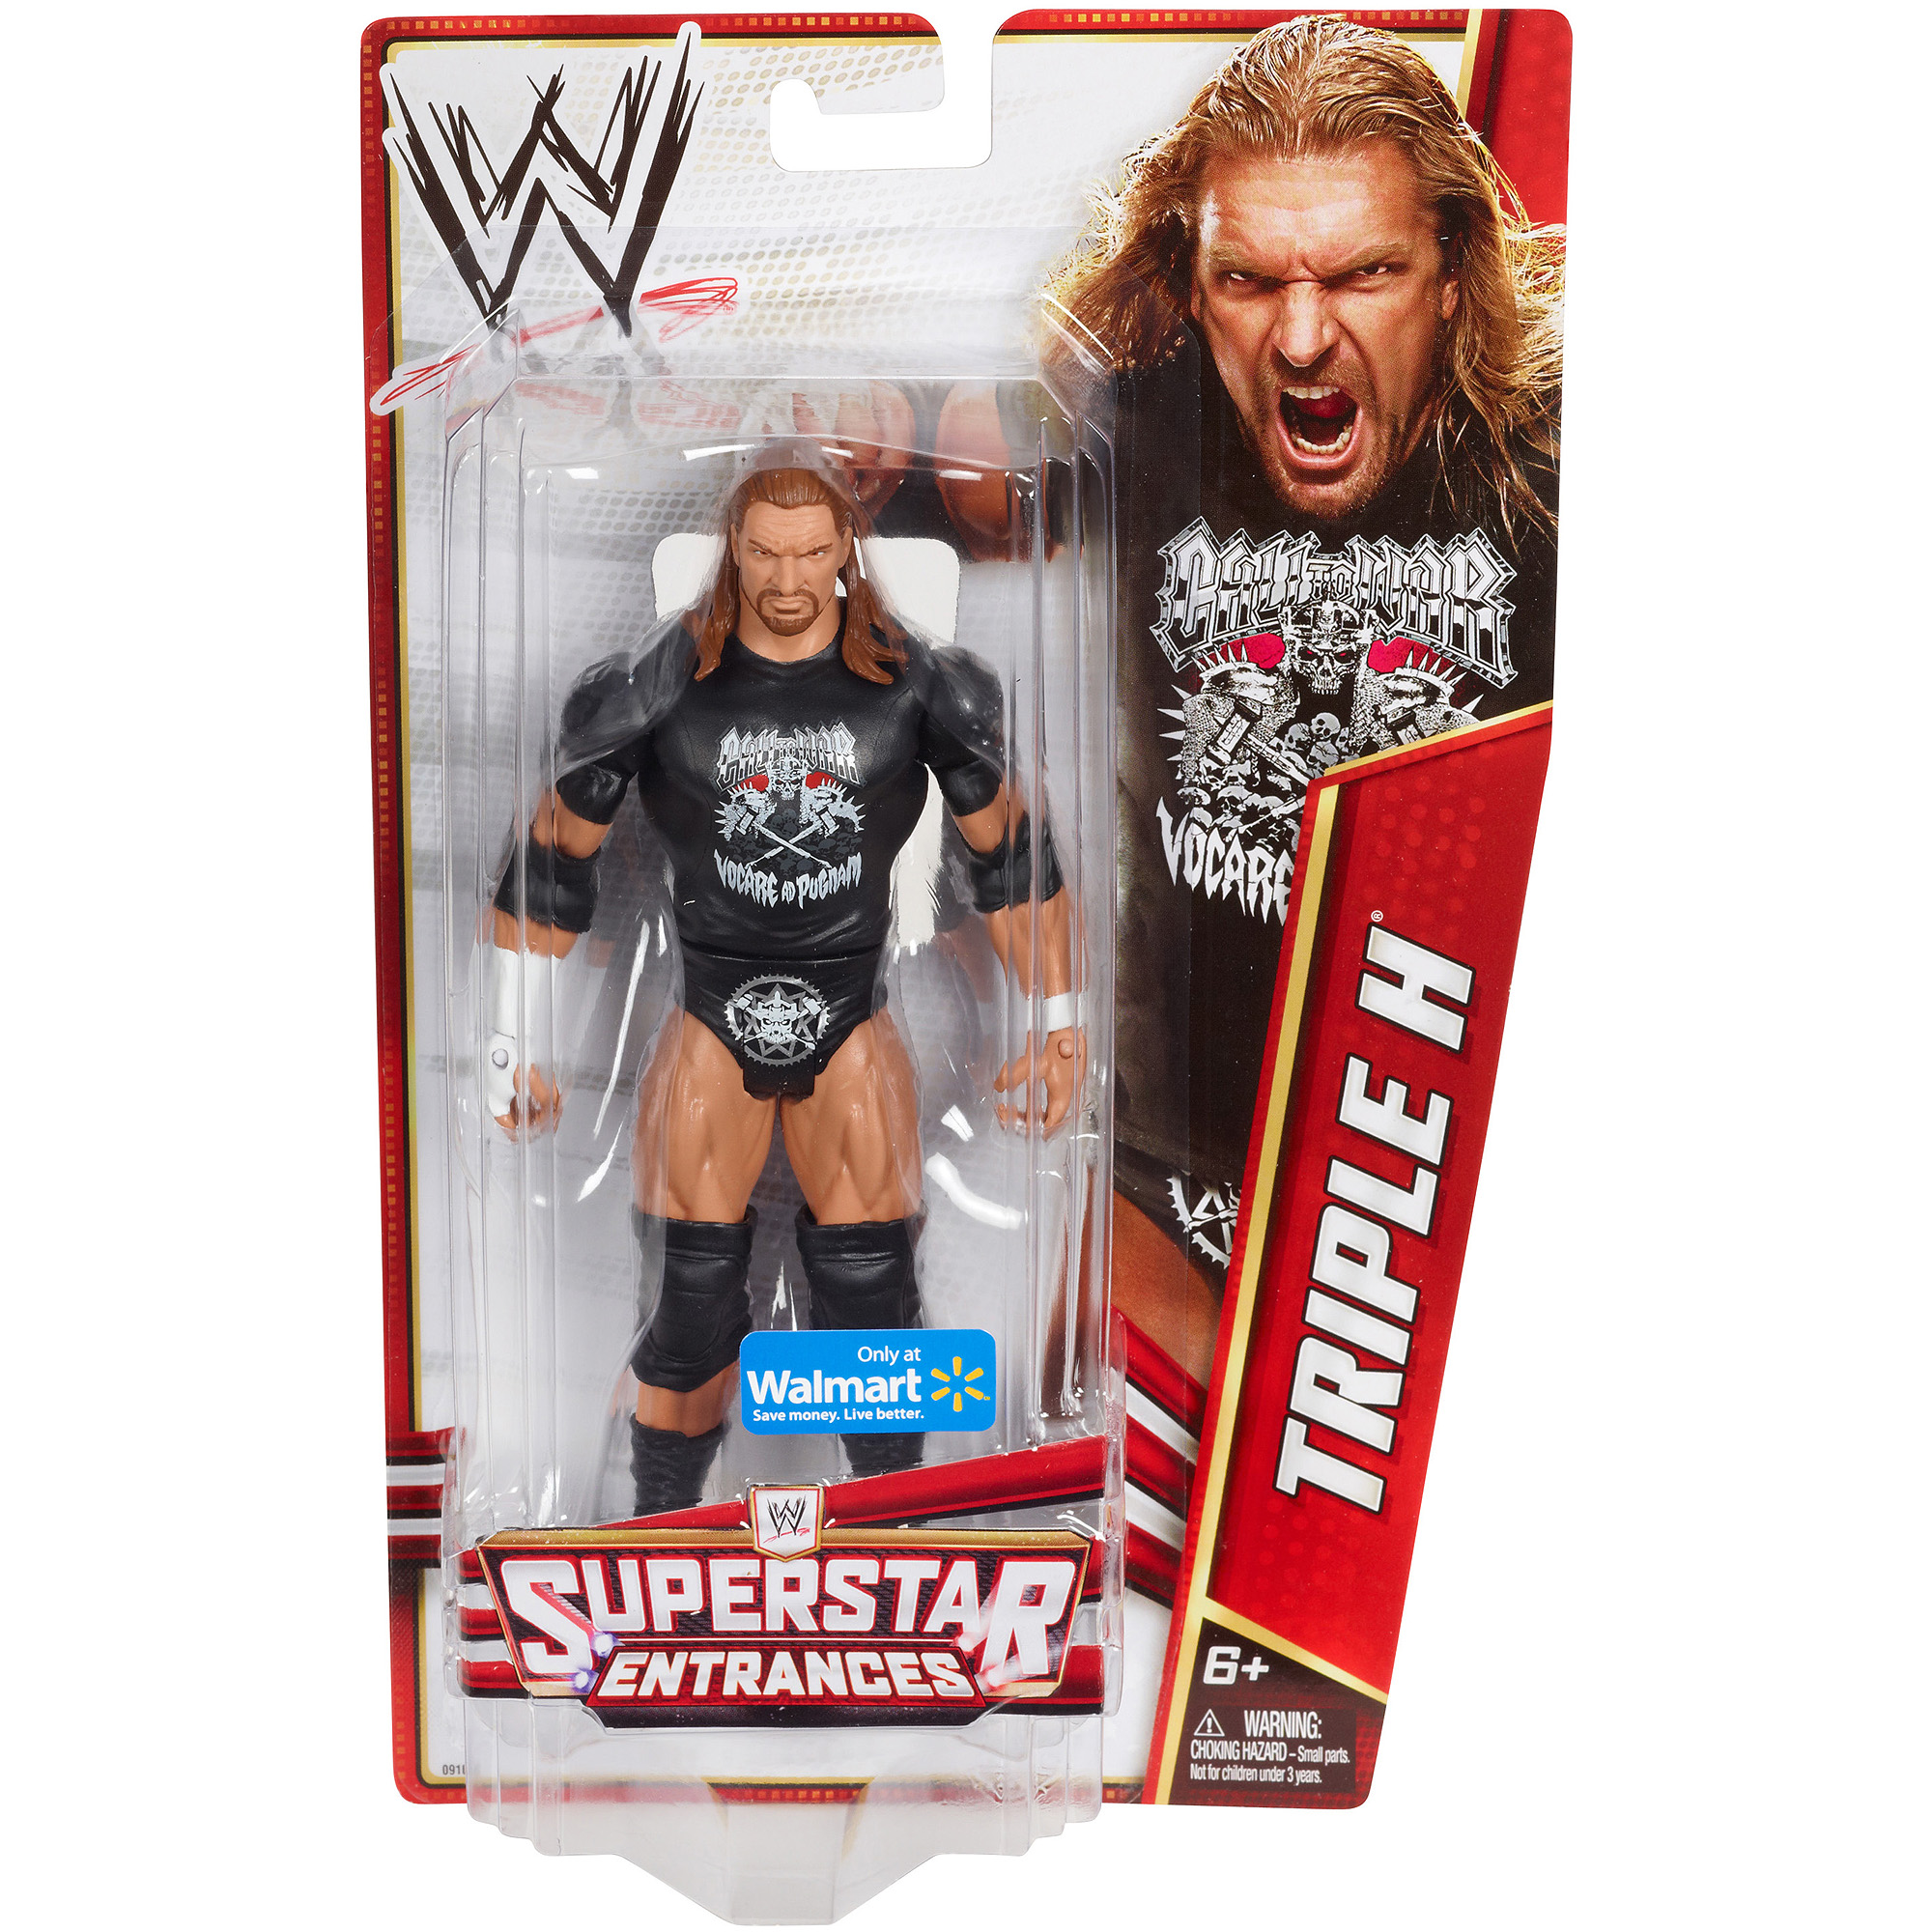 WWE Superstar Entrances Basic Series 001 (Walmart) (2012) Ccfbf666-7116-4000-947b-b022cdb1caa4_1.432b56d355d420abdb41f21d7d8929fc